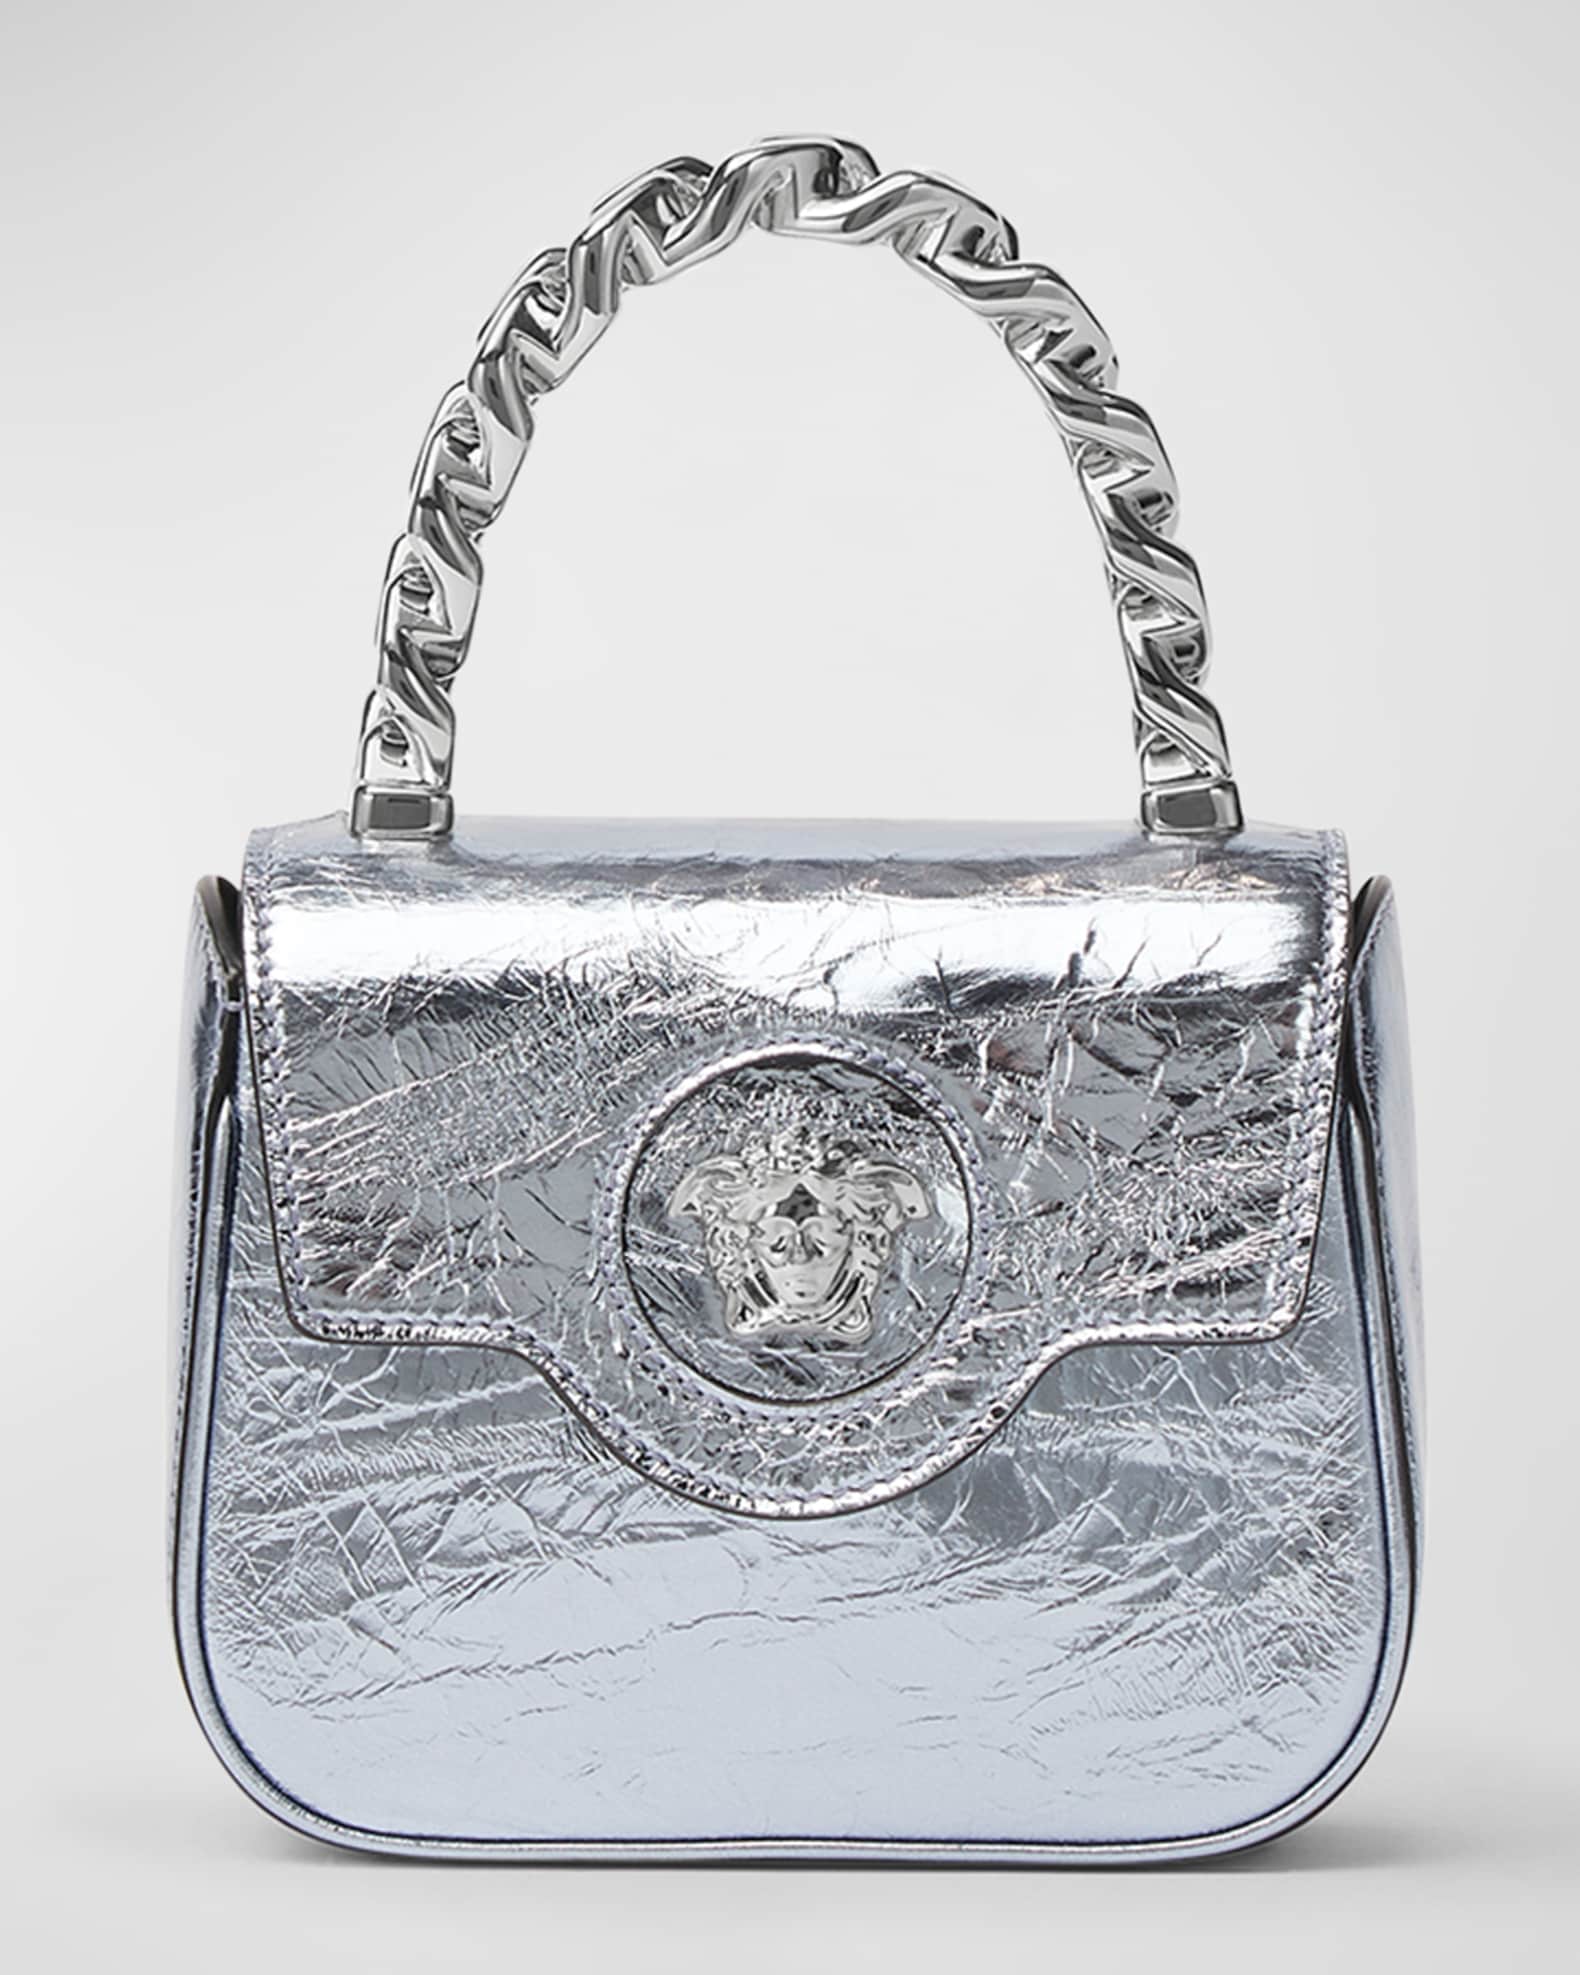 Versace Patent Leather 'La Medusa' Mini Bag - Os Black